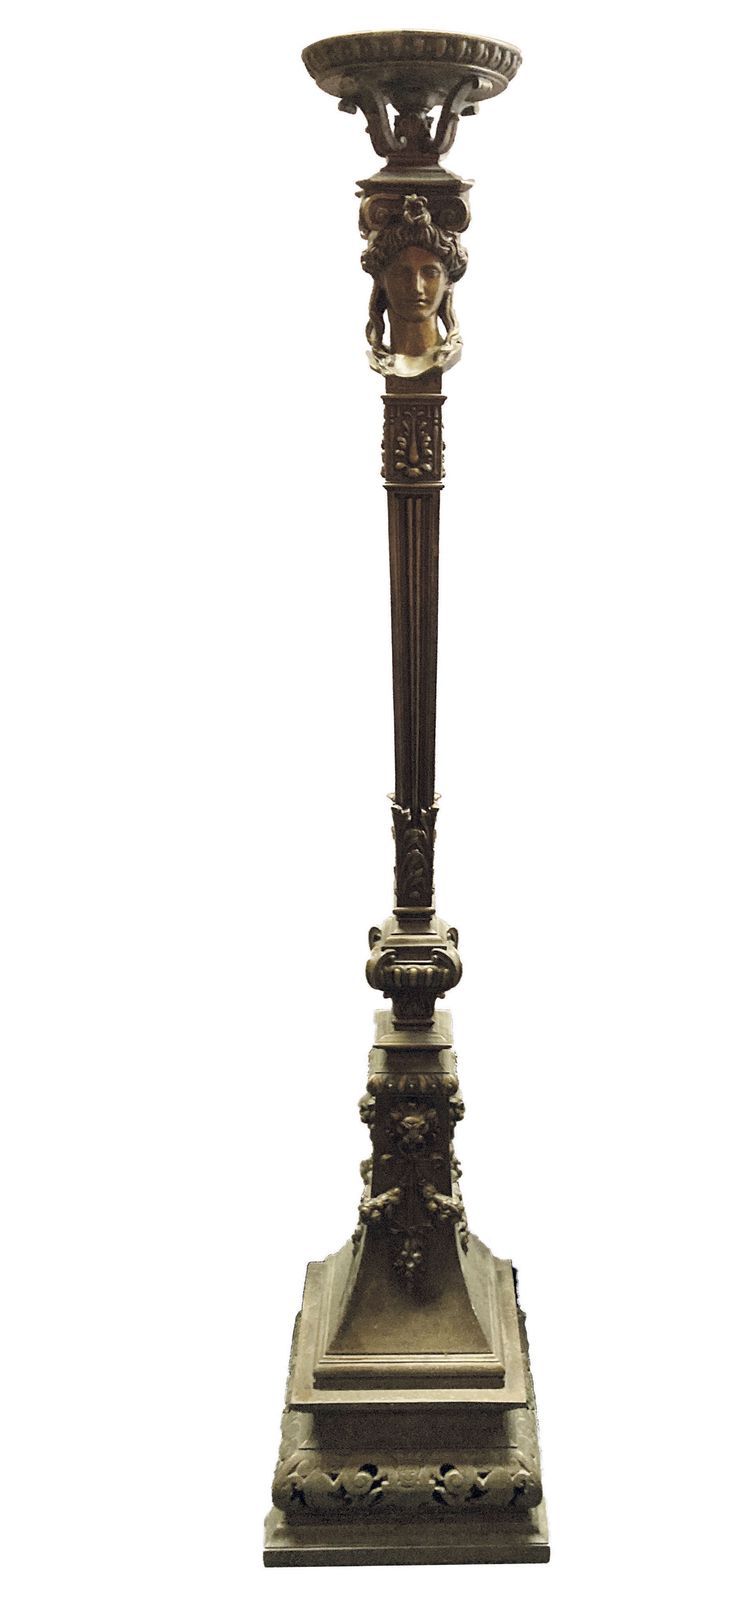 Null 230 铸铁落地灯，有铜锈，装饰有鞘中的加里多尼亚，有凹槽和叶子的轴，截顶的圆锥形底座部分镂空。

约1880年。

身高：182厘米